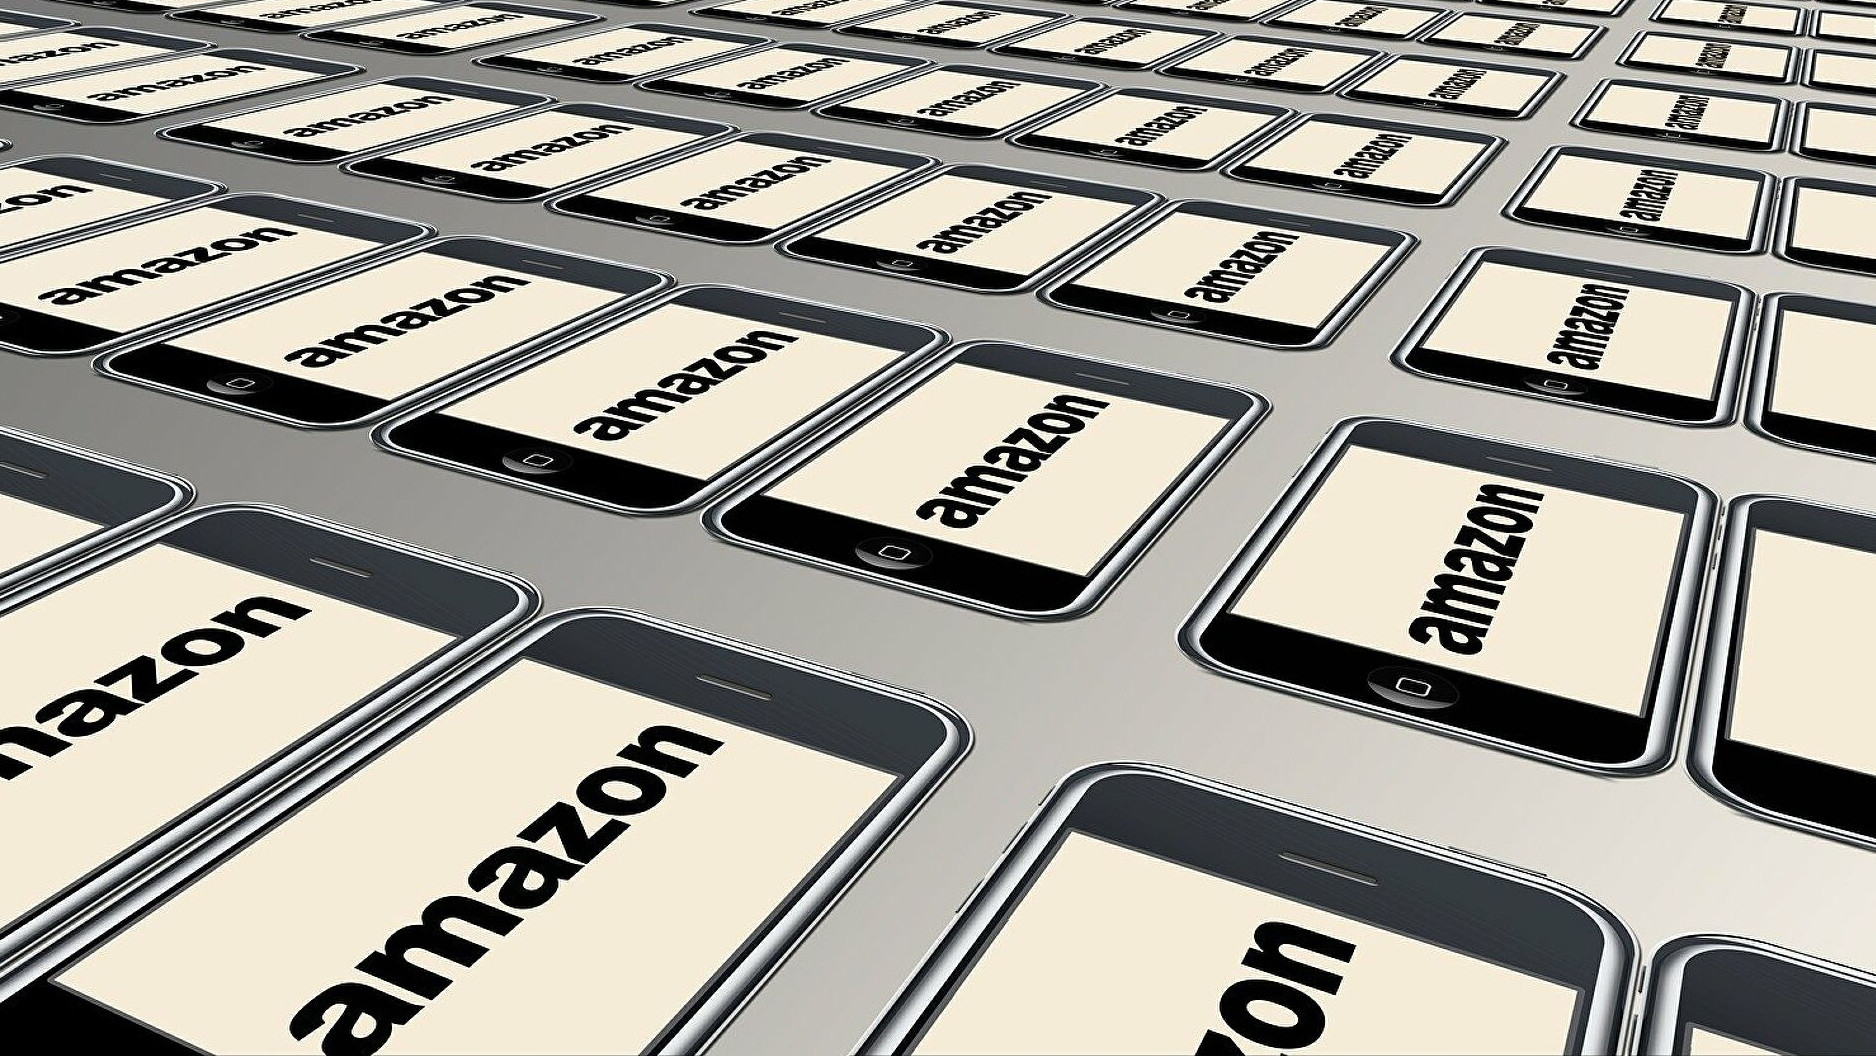 Amazon prevé crear este año 3.000 empleos en España y su plantilla crece a 15.000